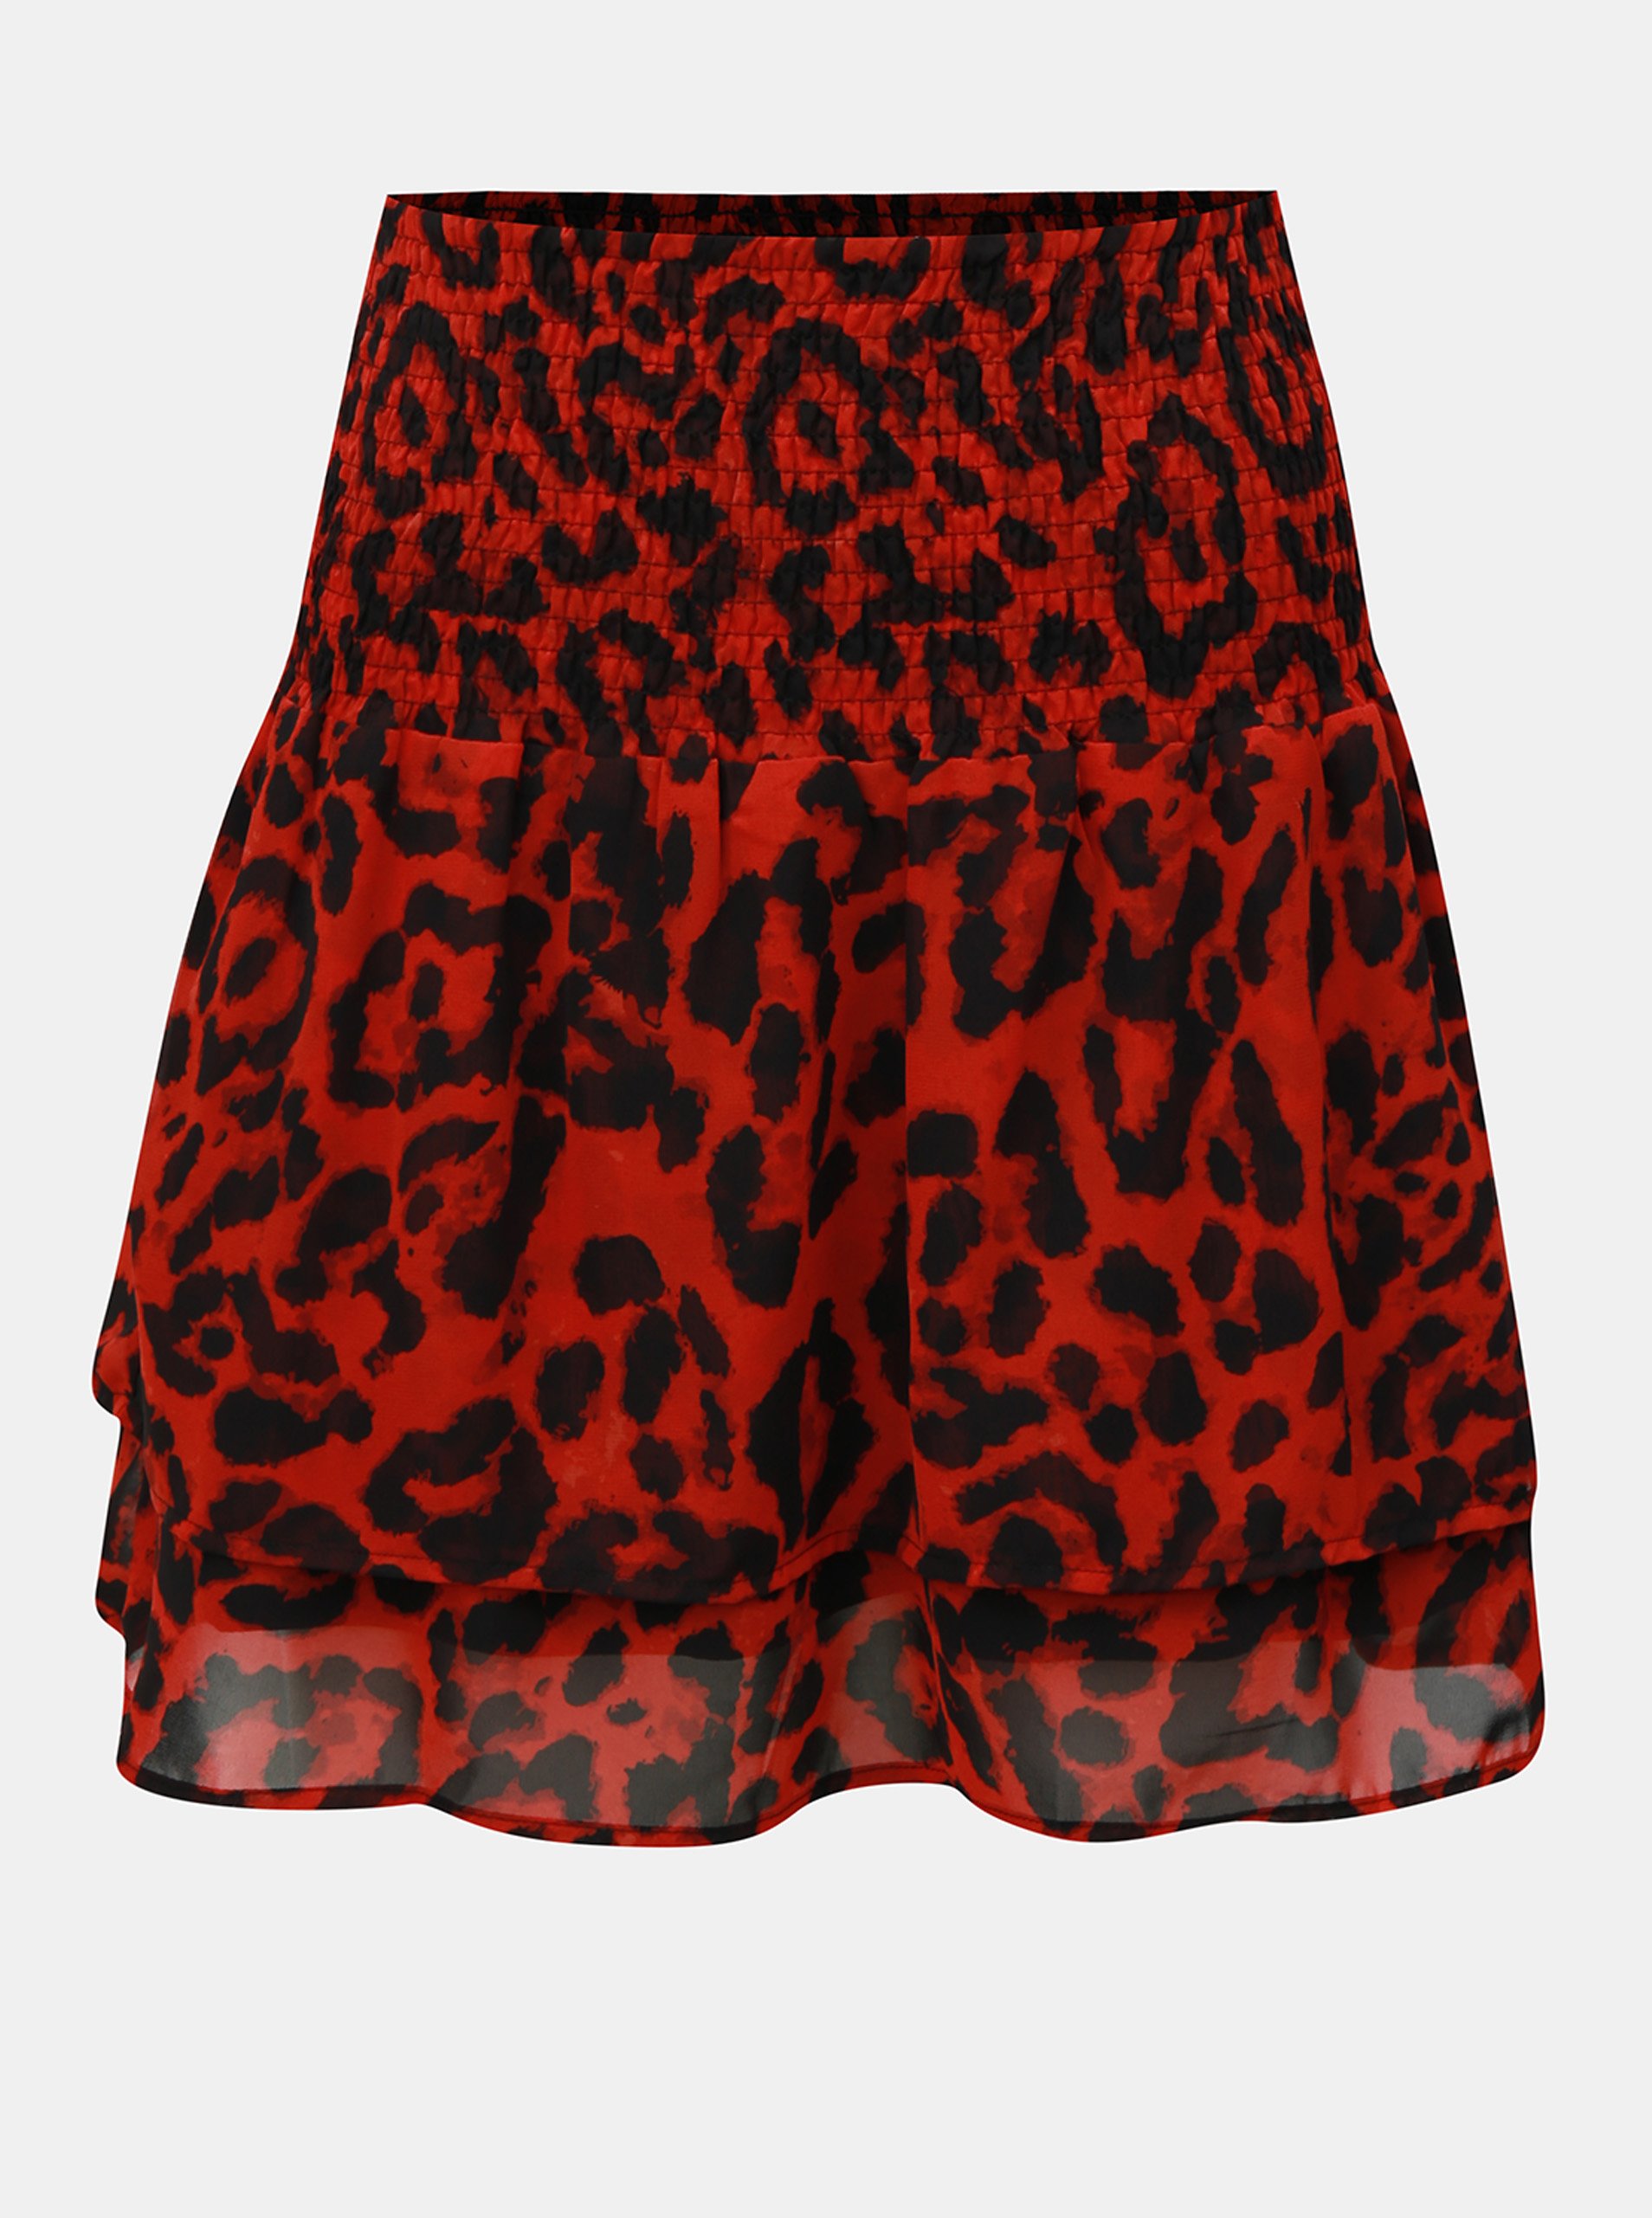 černo-červená vzorovaná sukně s pružnou gumou v pase Noisy May Jean